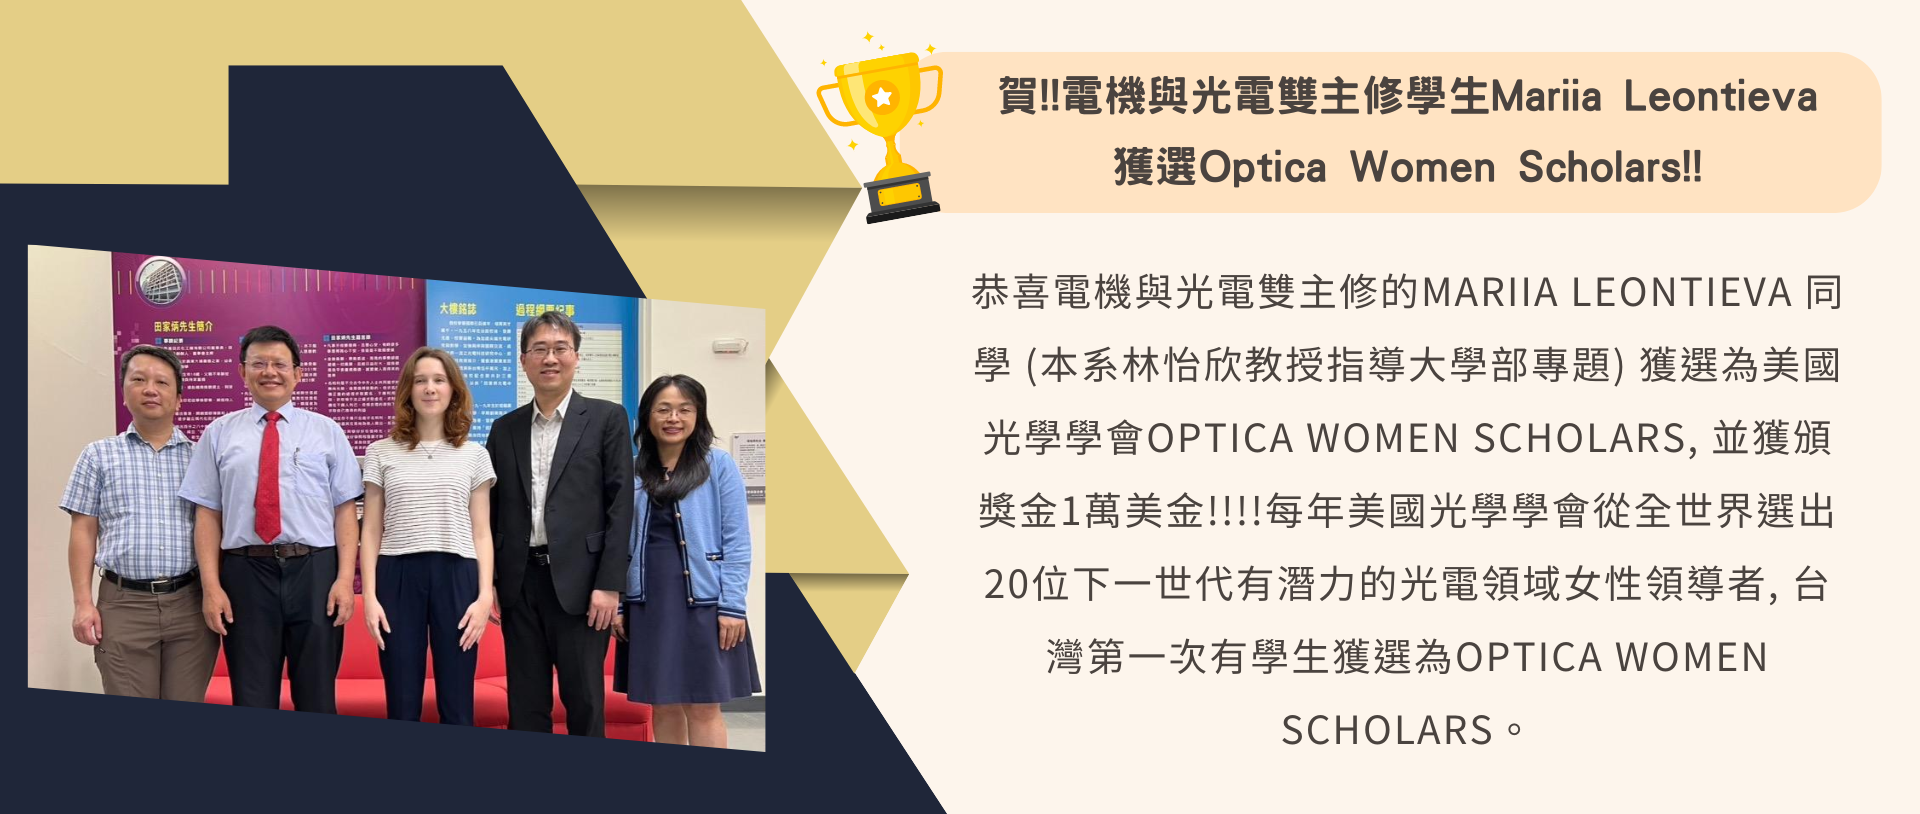 賀!!電機與光電雙主修學生Mariia Leontieva 獲選Optica Women Scholars!!